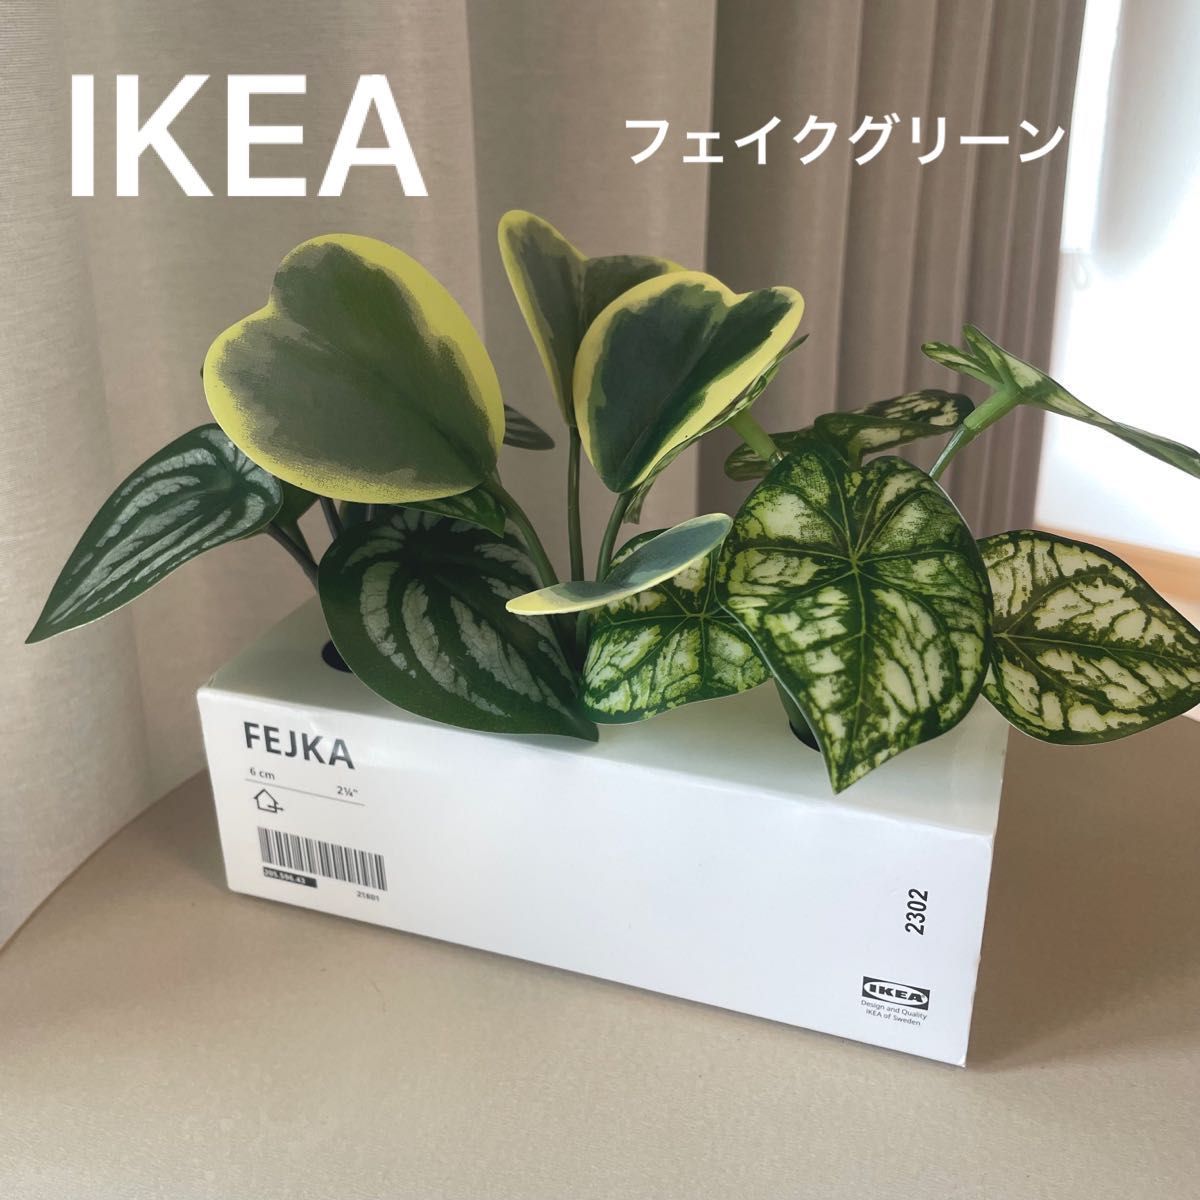 【新品】IKEA イケア フェイクグリーン 3個セット（フェイカ）人工観葉植物 造花